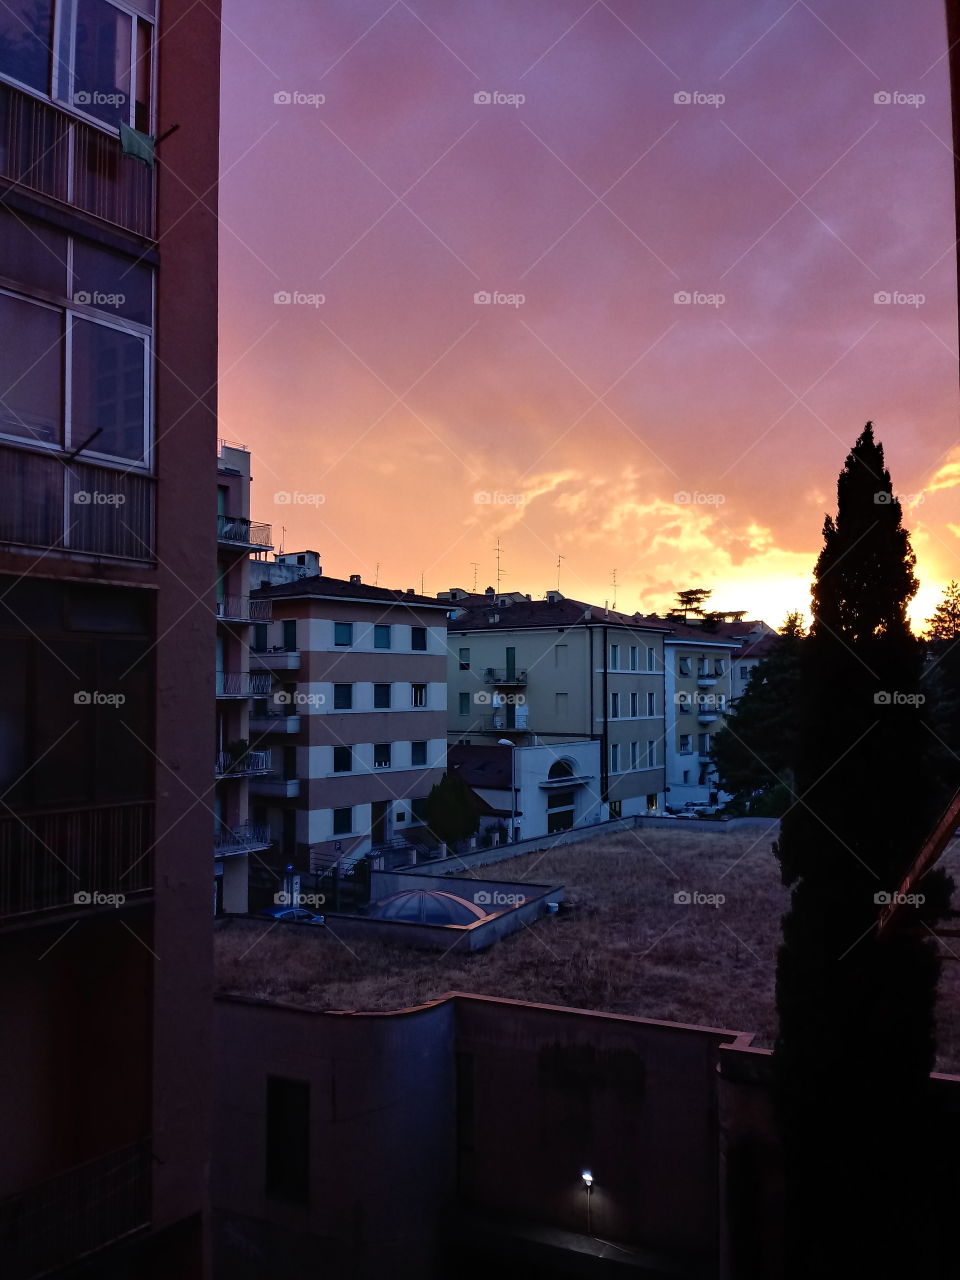 tramonto toscano. tuscany sunset evening